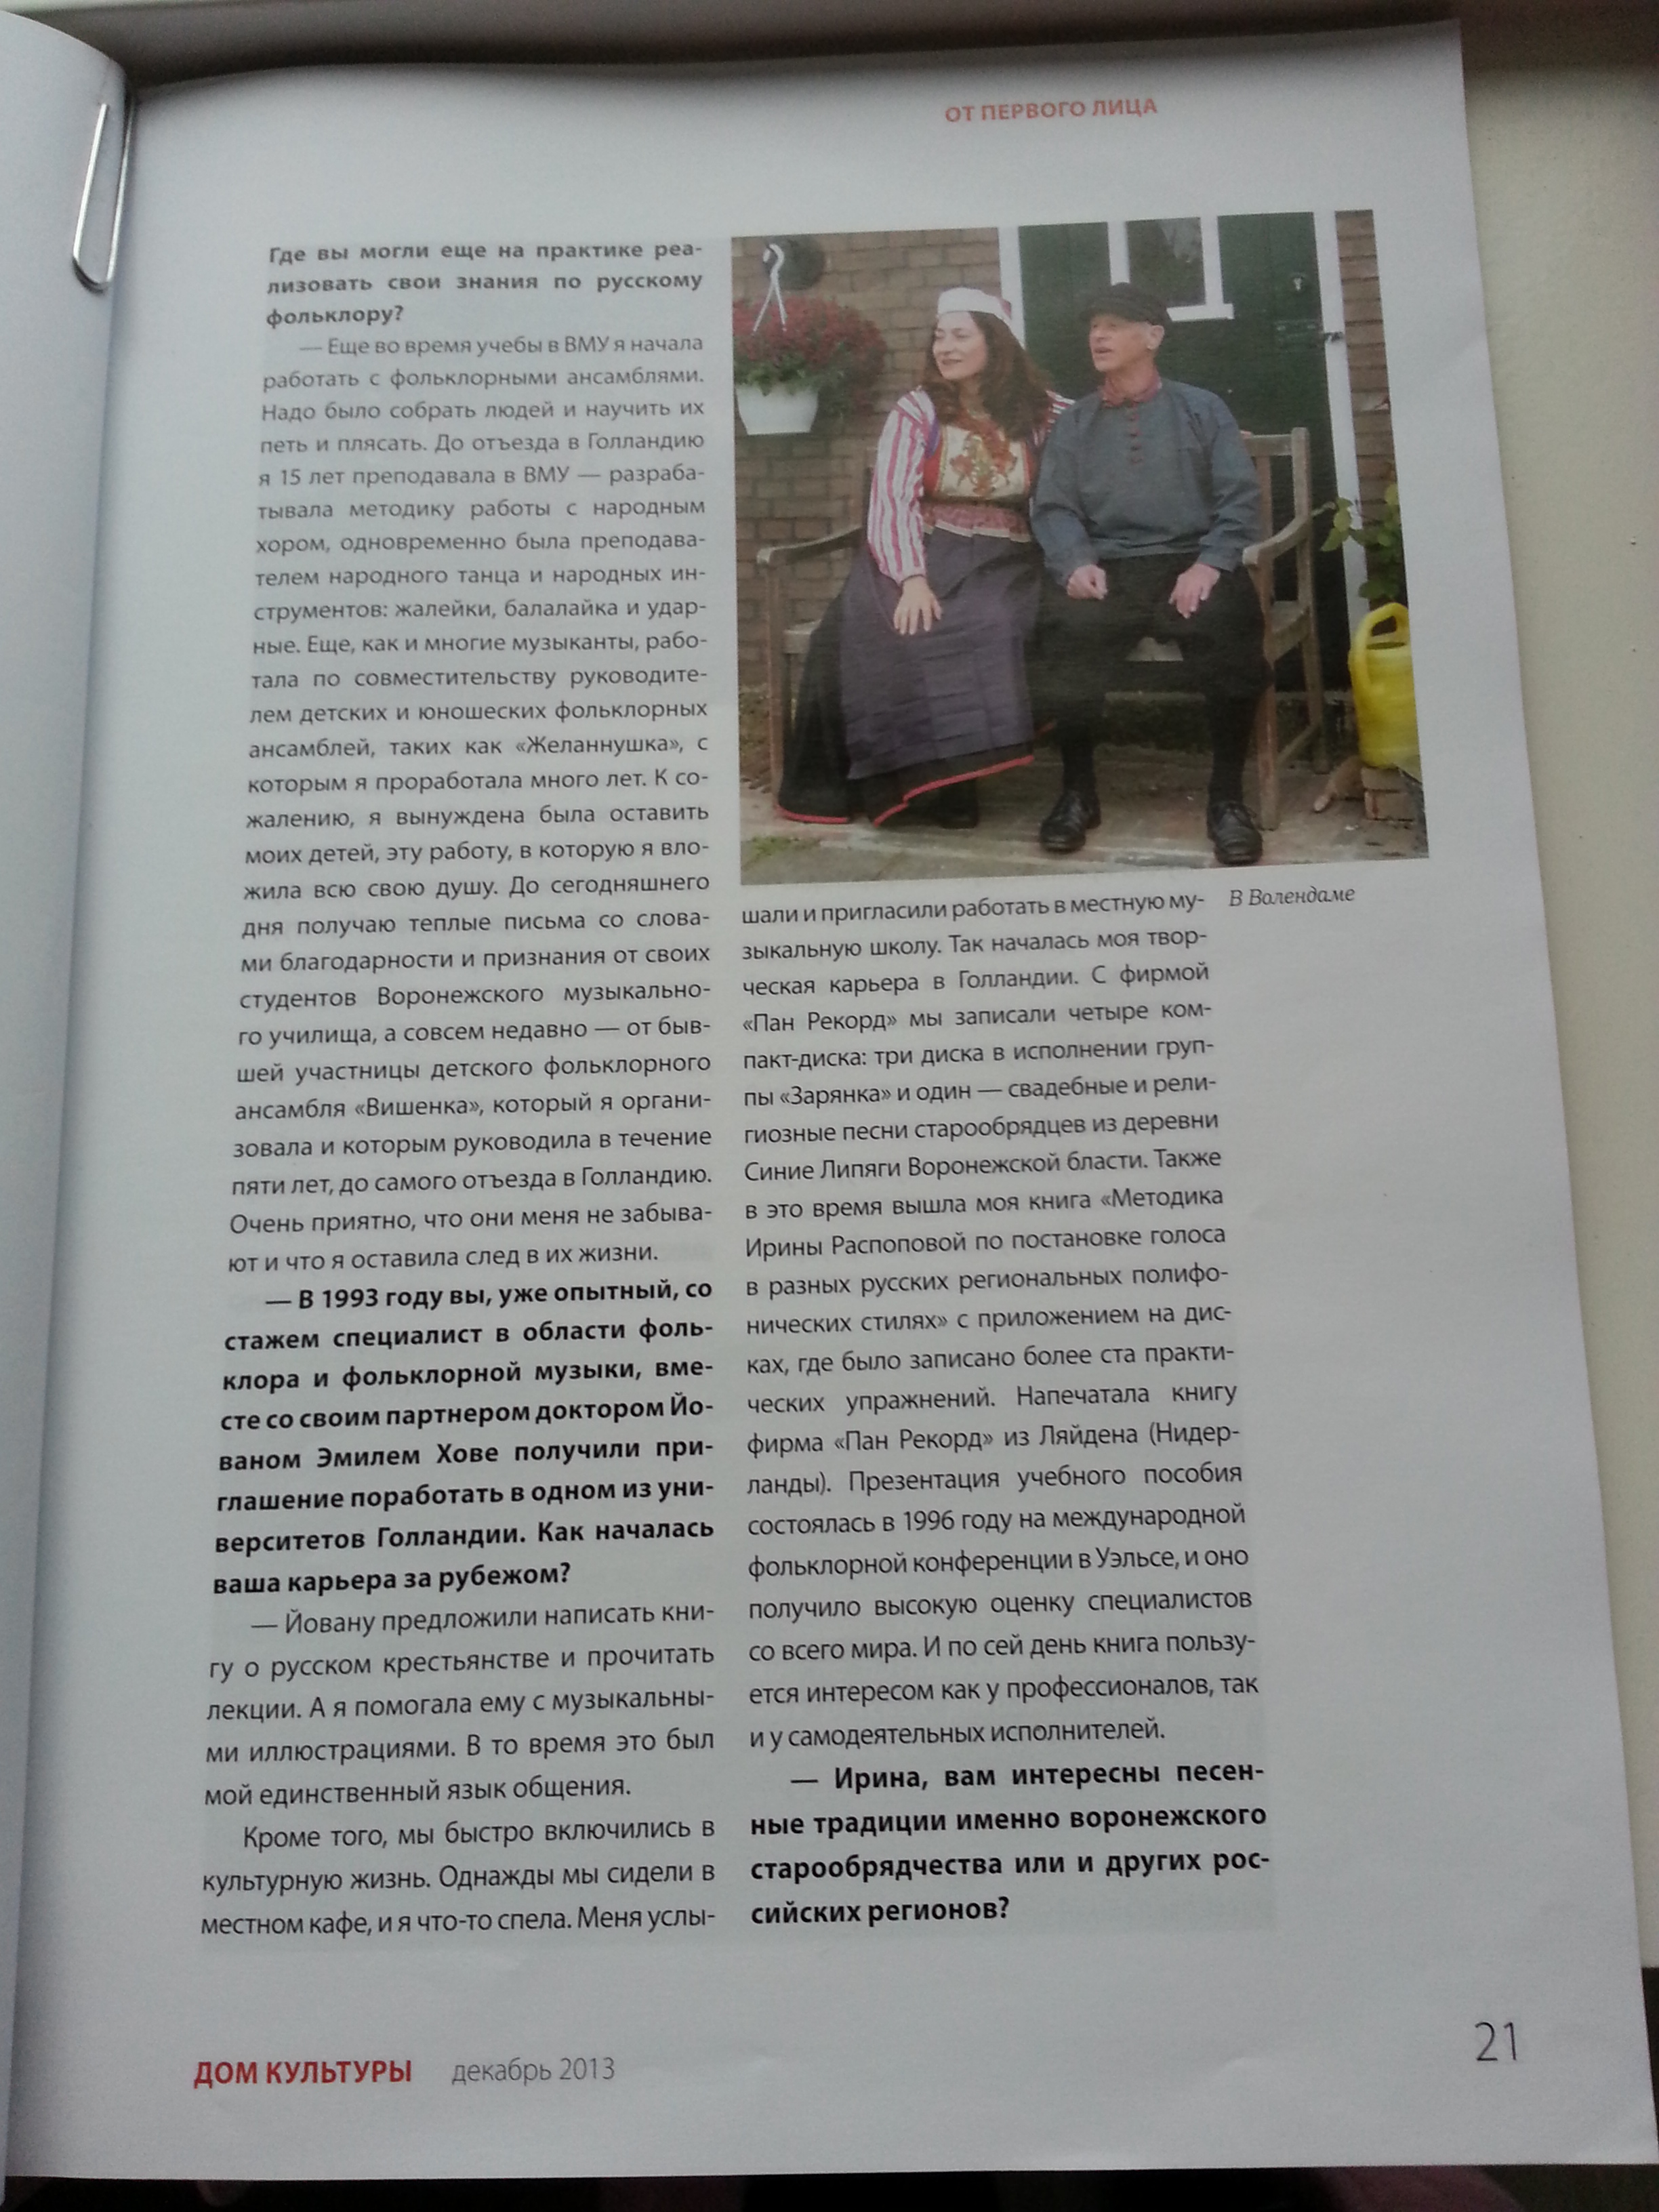 tijdschrift "Huis van cultuur" dec. 2013 Moskou. Irina Raspopova: Överal propagandeer ik echte folklore muziek van Rusland"